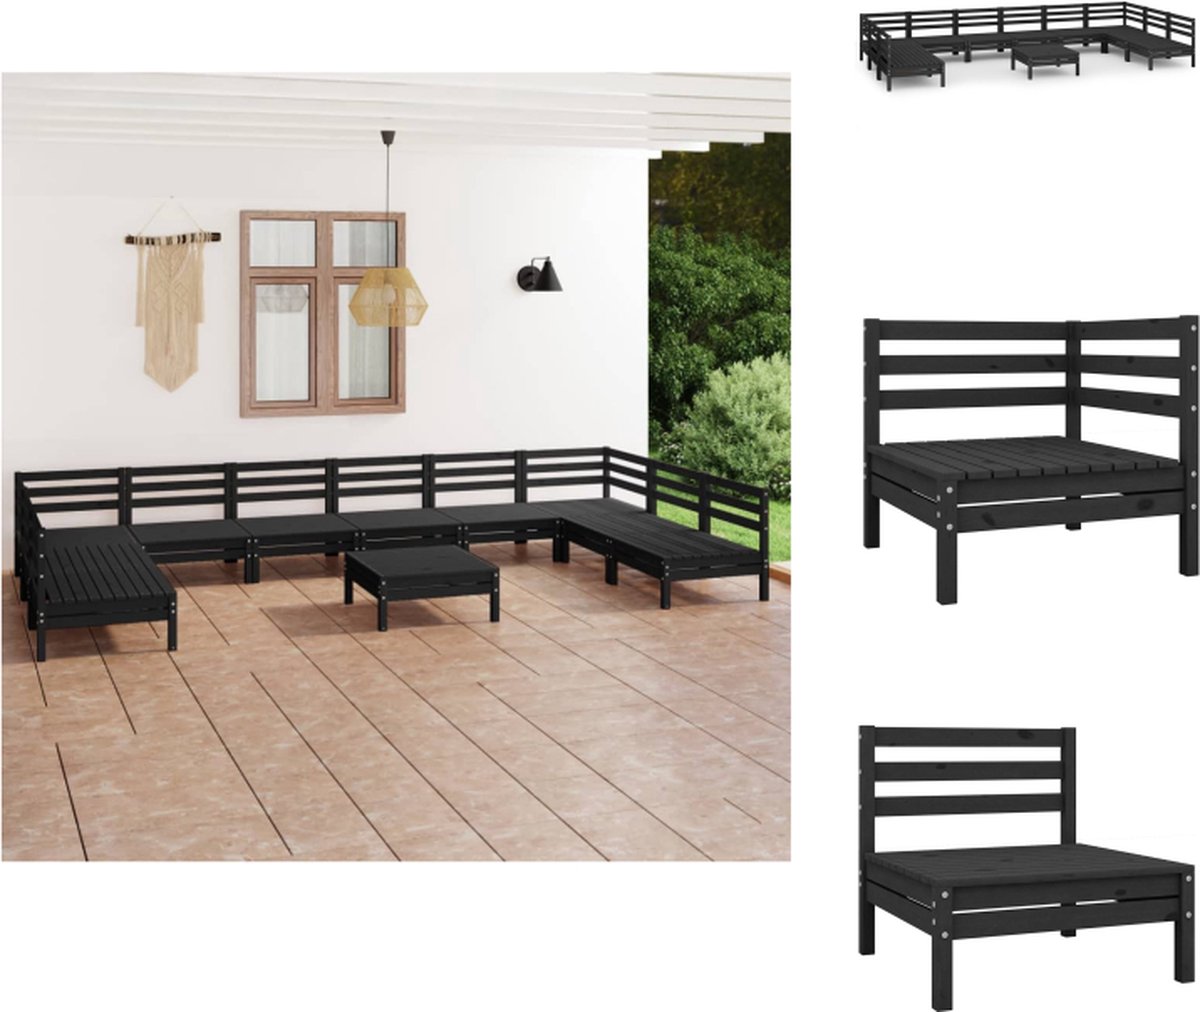 VidaXL Loungeset hout zwart 63.5x63.5x62.5 cm modulair design inclusief 2 hoekbanken 8 middenbanken en 1 tafel voetenbank Tuinset